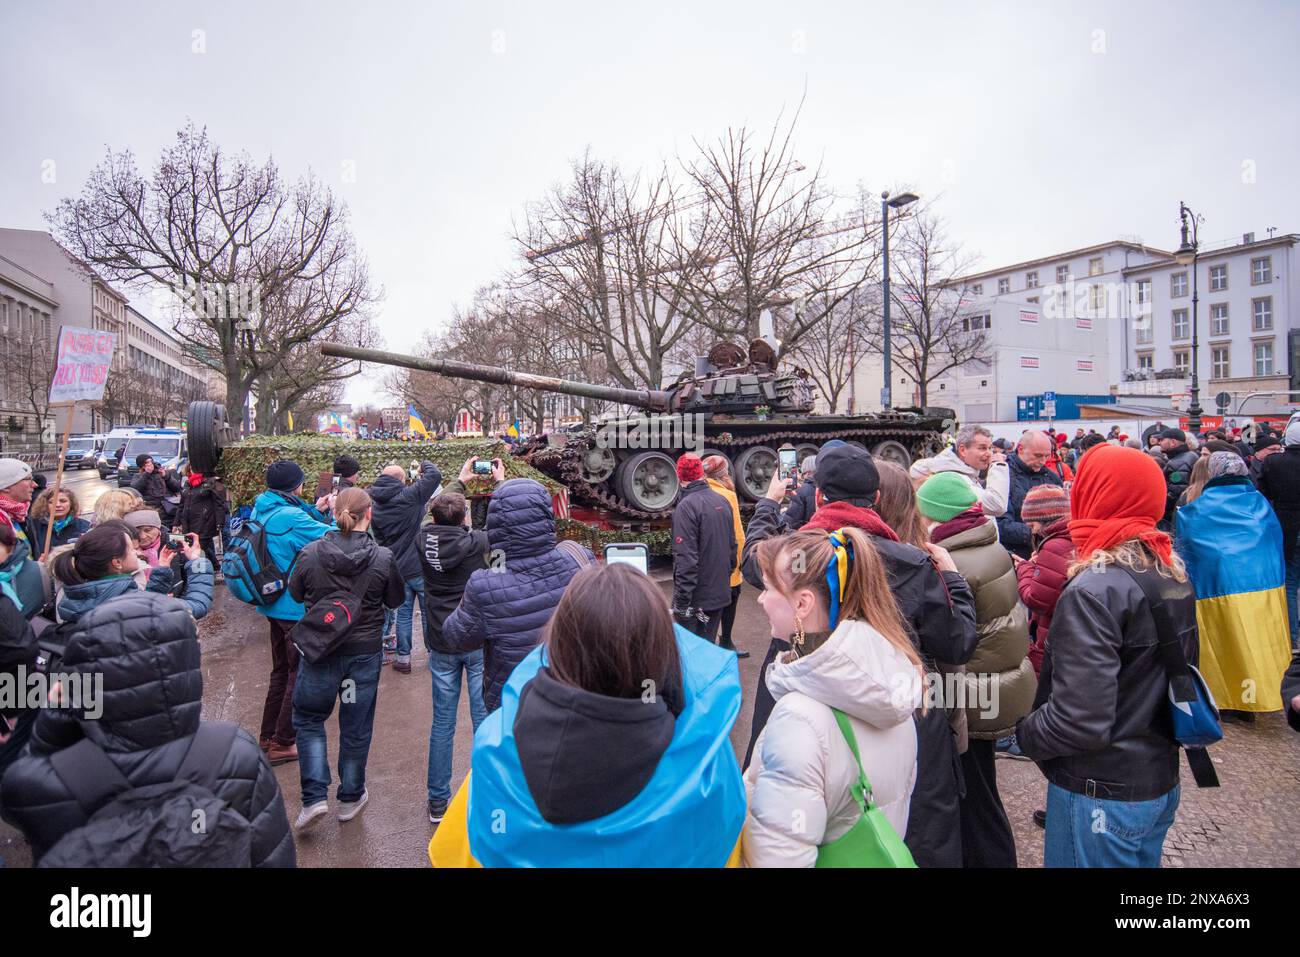 Pro-ukrainische Demonstration in Berlin mit zerstörtem russischen Panzer zum ersten Jahrestag der russischen Invasion der Ukraine Stockfoto